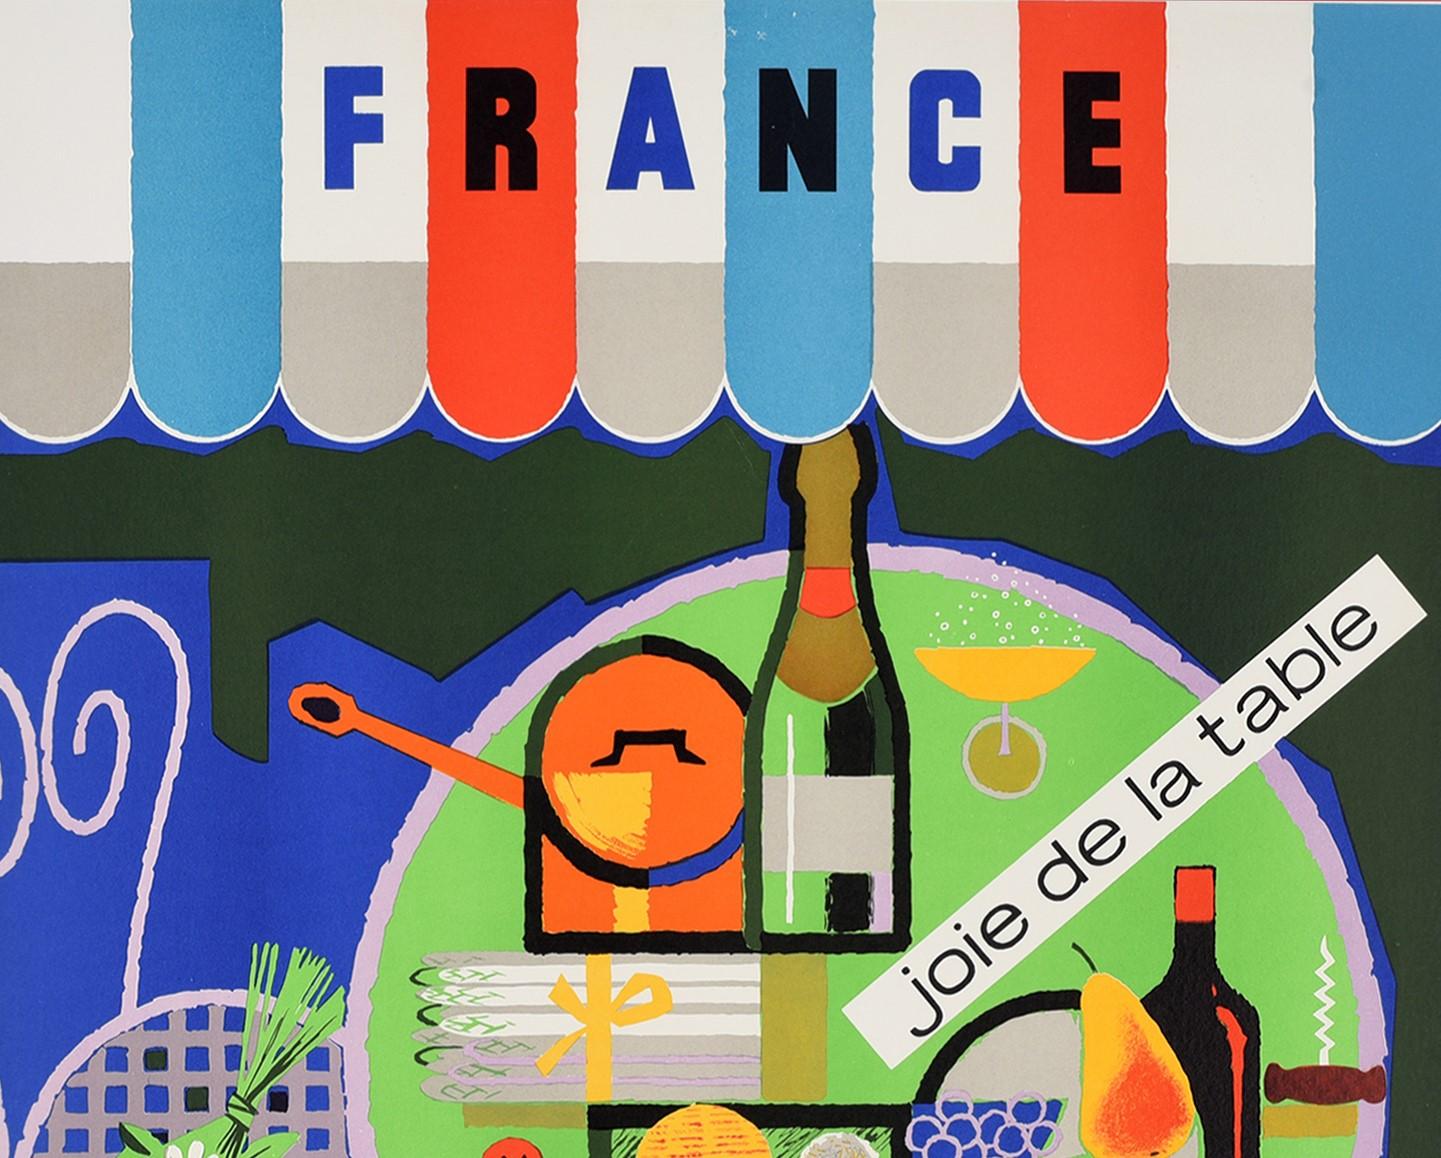 Original Vintage Poster France Joie De La Table Joie De Vivre French Wine & Food - Print by R Dumoulin